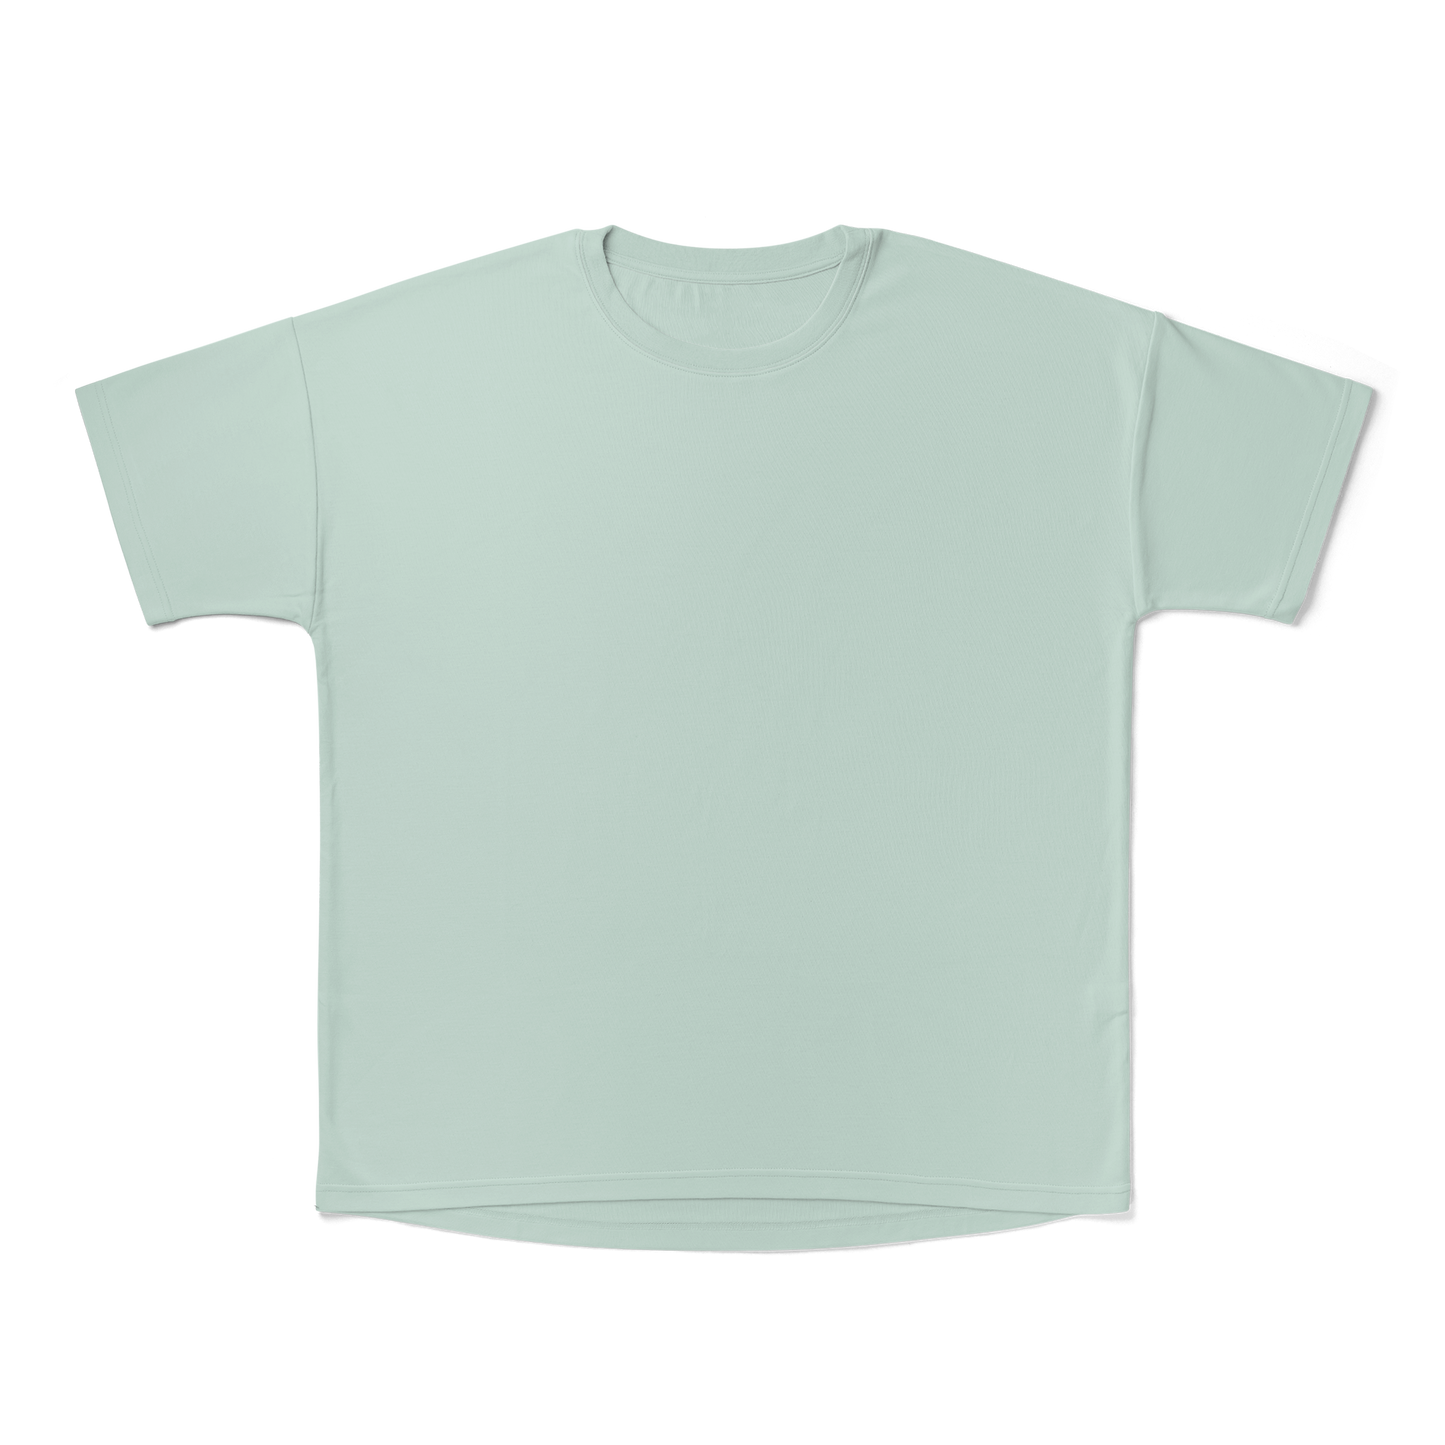 Viscose Bamboo + Organic Cotton T-shirt - Swell